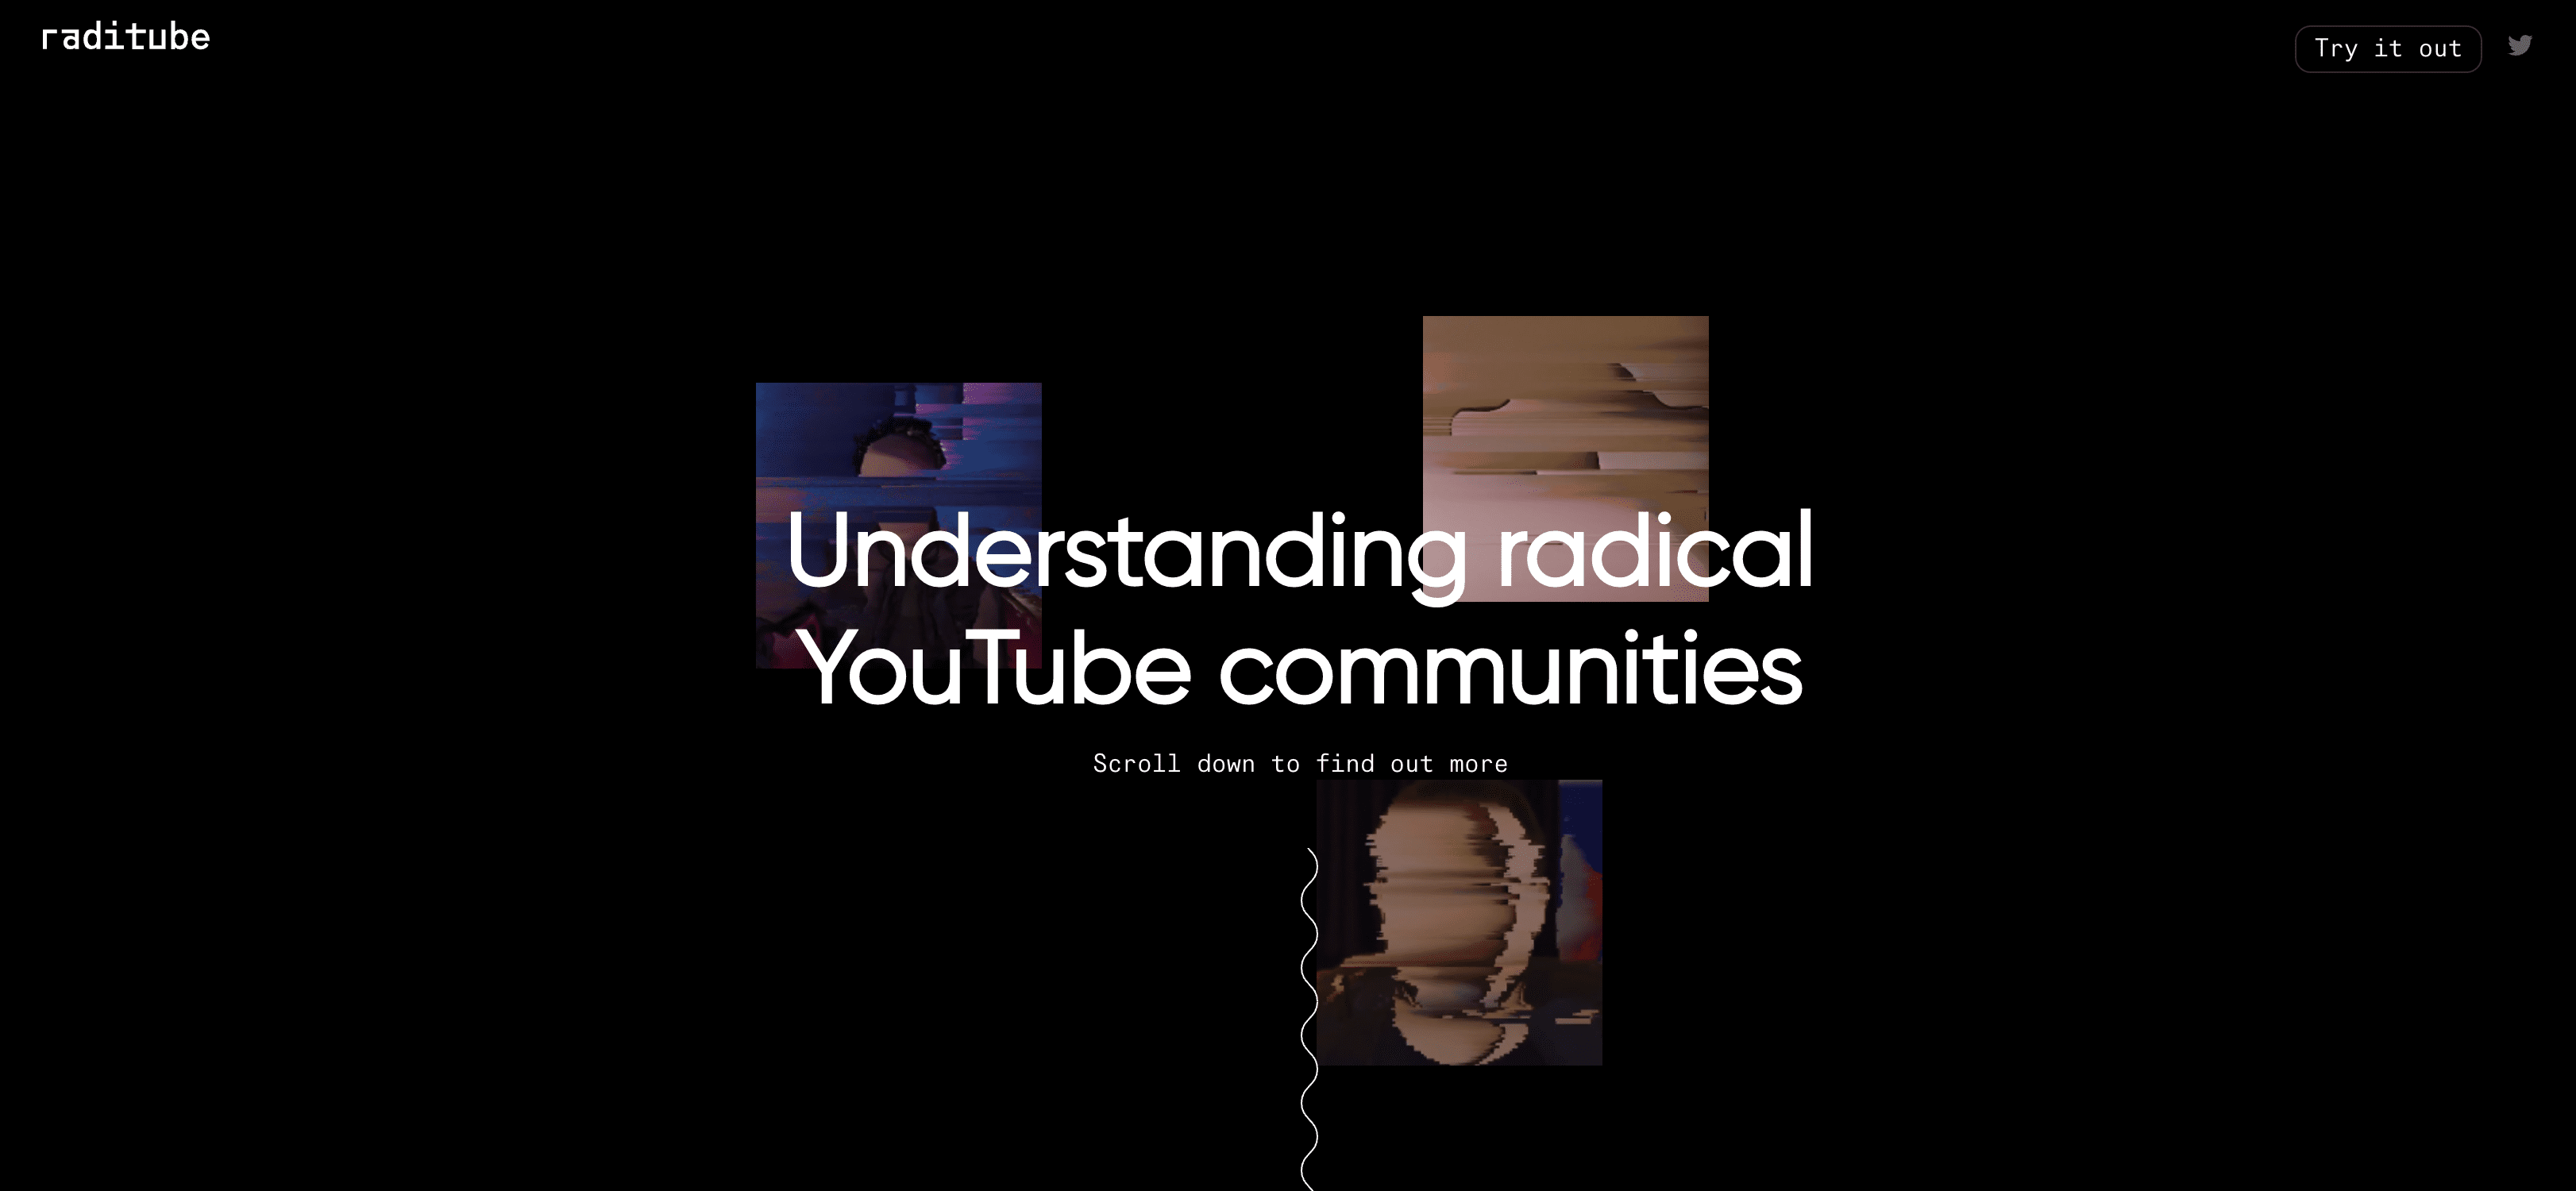 Tools Radicale-YouTube-kanalen-doorzoeken-met-RadiTube